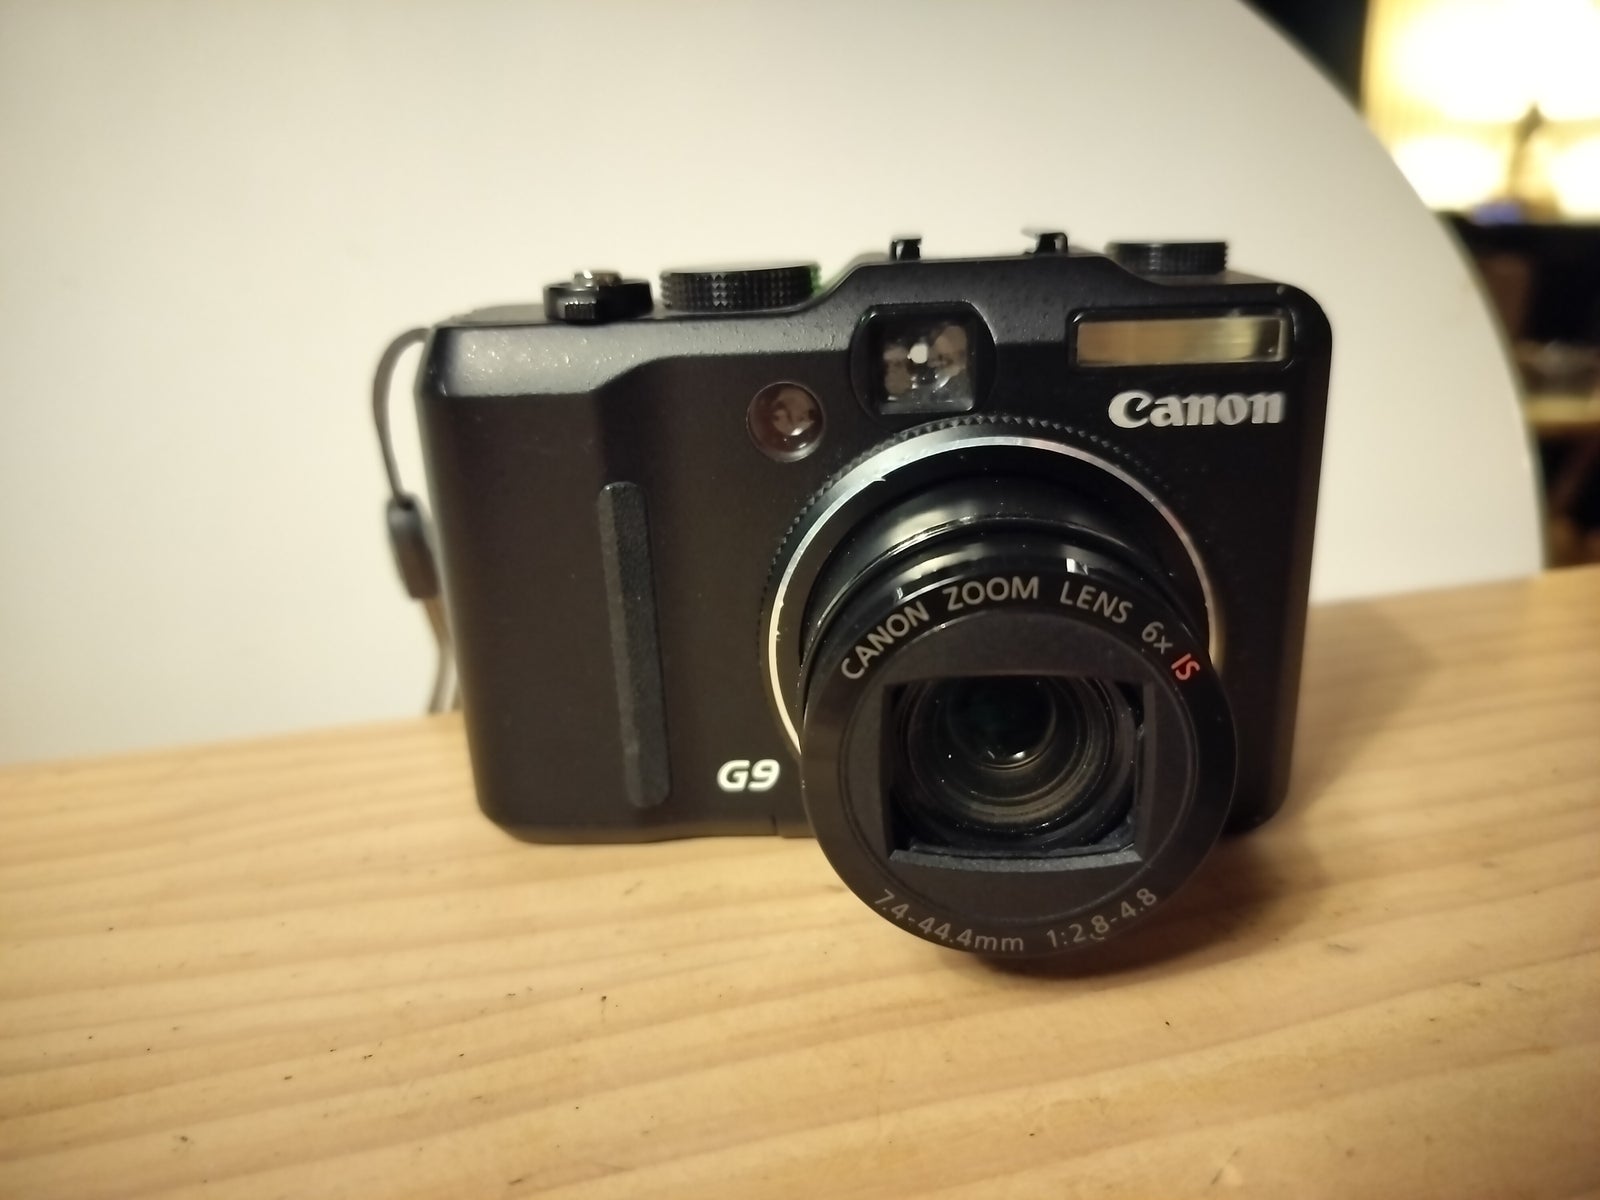 Canon, G9, 12.1 megapixels